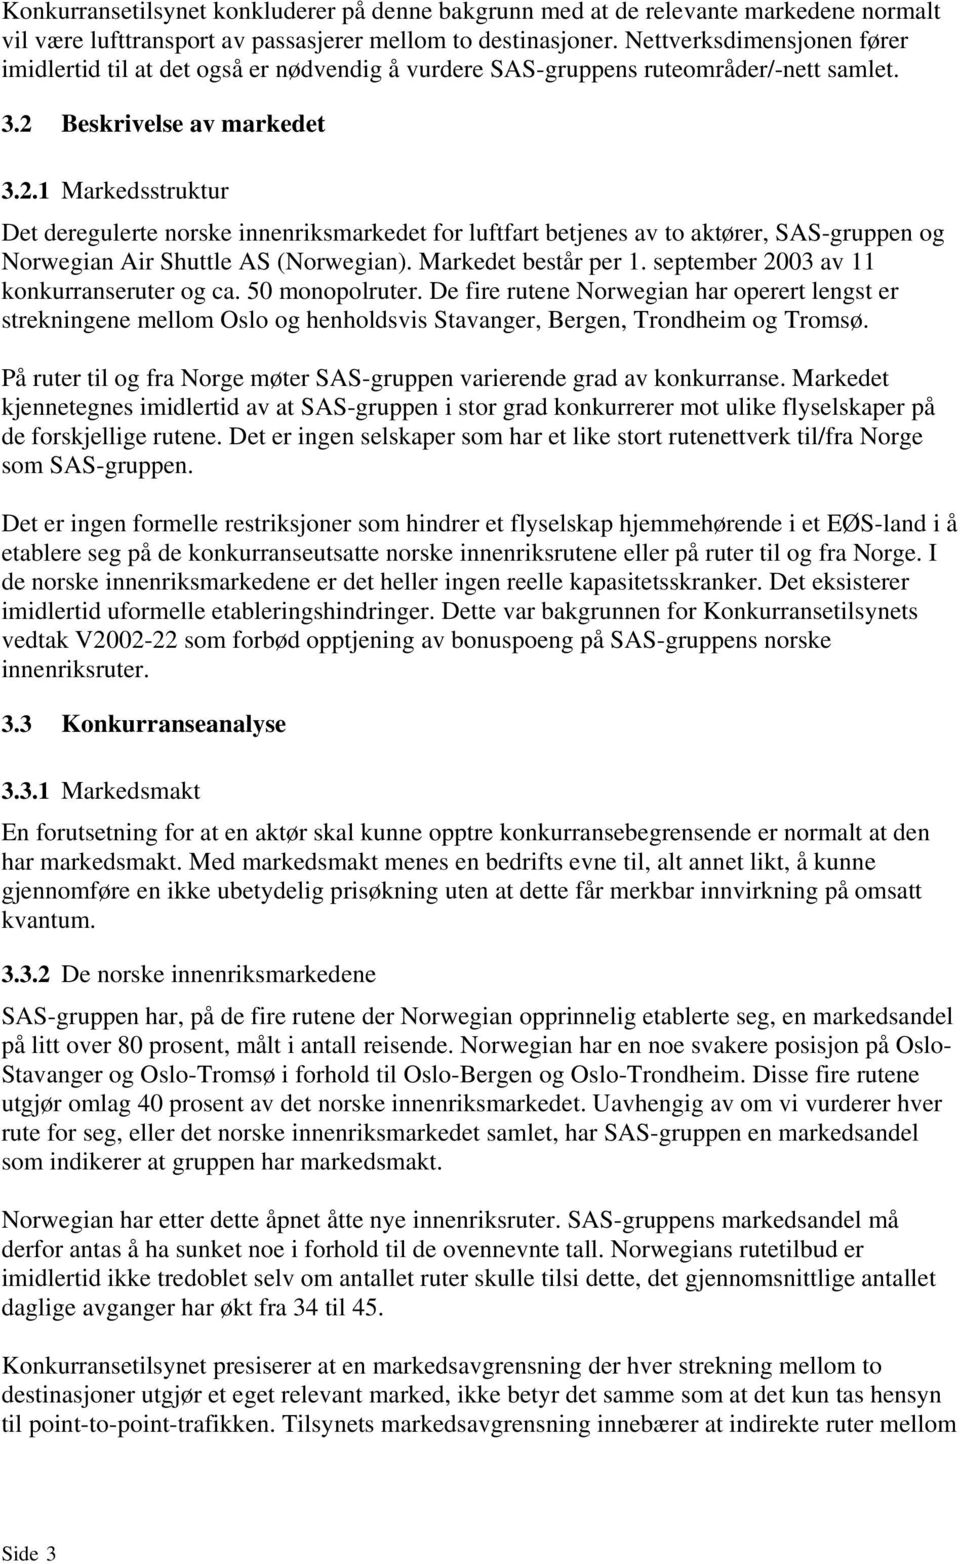 Beskrivelse av markedet 3.2.1 Markedsstruktur Det deregulerte norske innenriksmarkedet for luftfart betjenes av to aktører, SAS-gruppen og Norwegian Air Shuttle AS (Norwegian). Markedet består per 1.